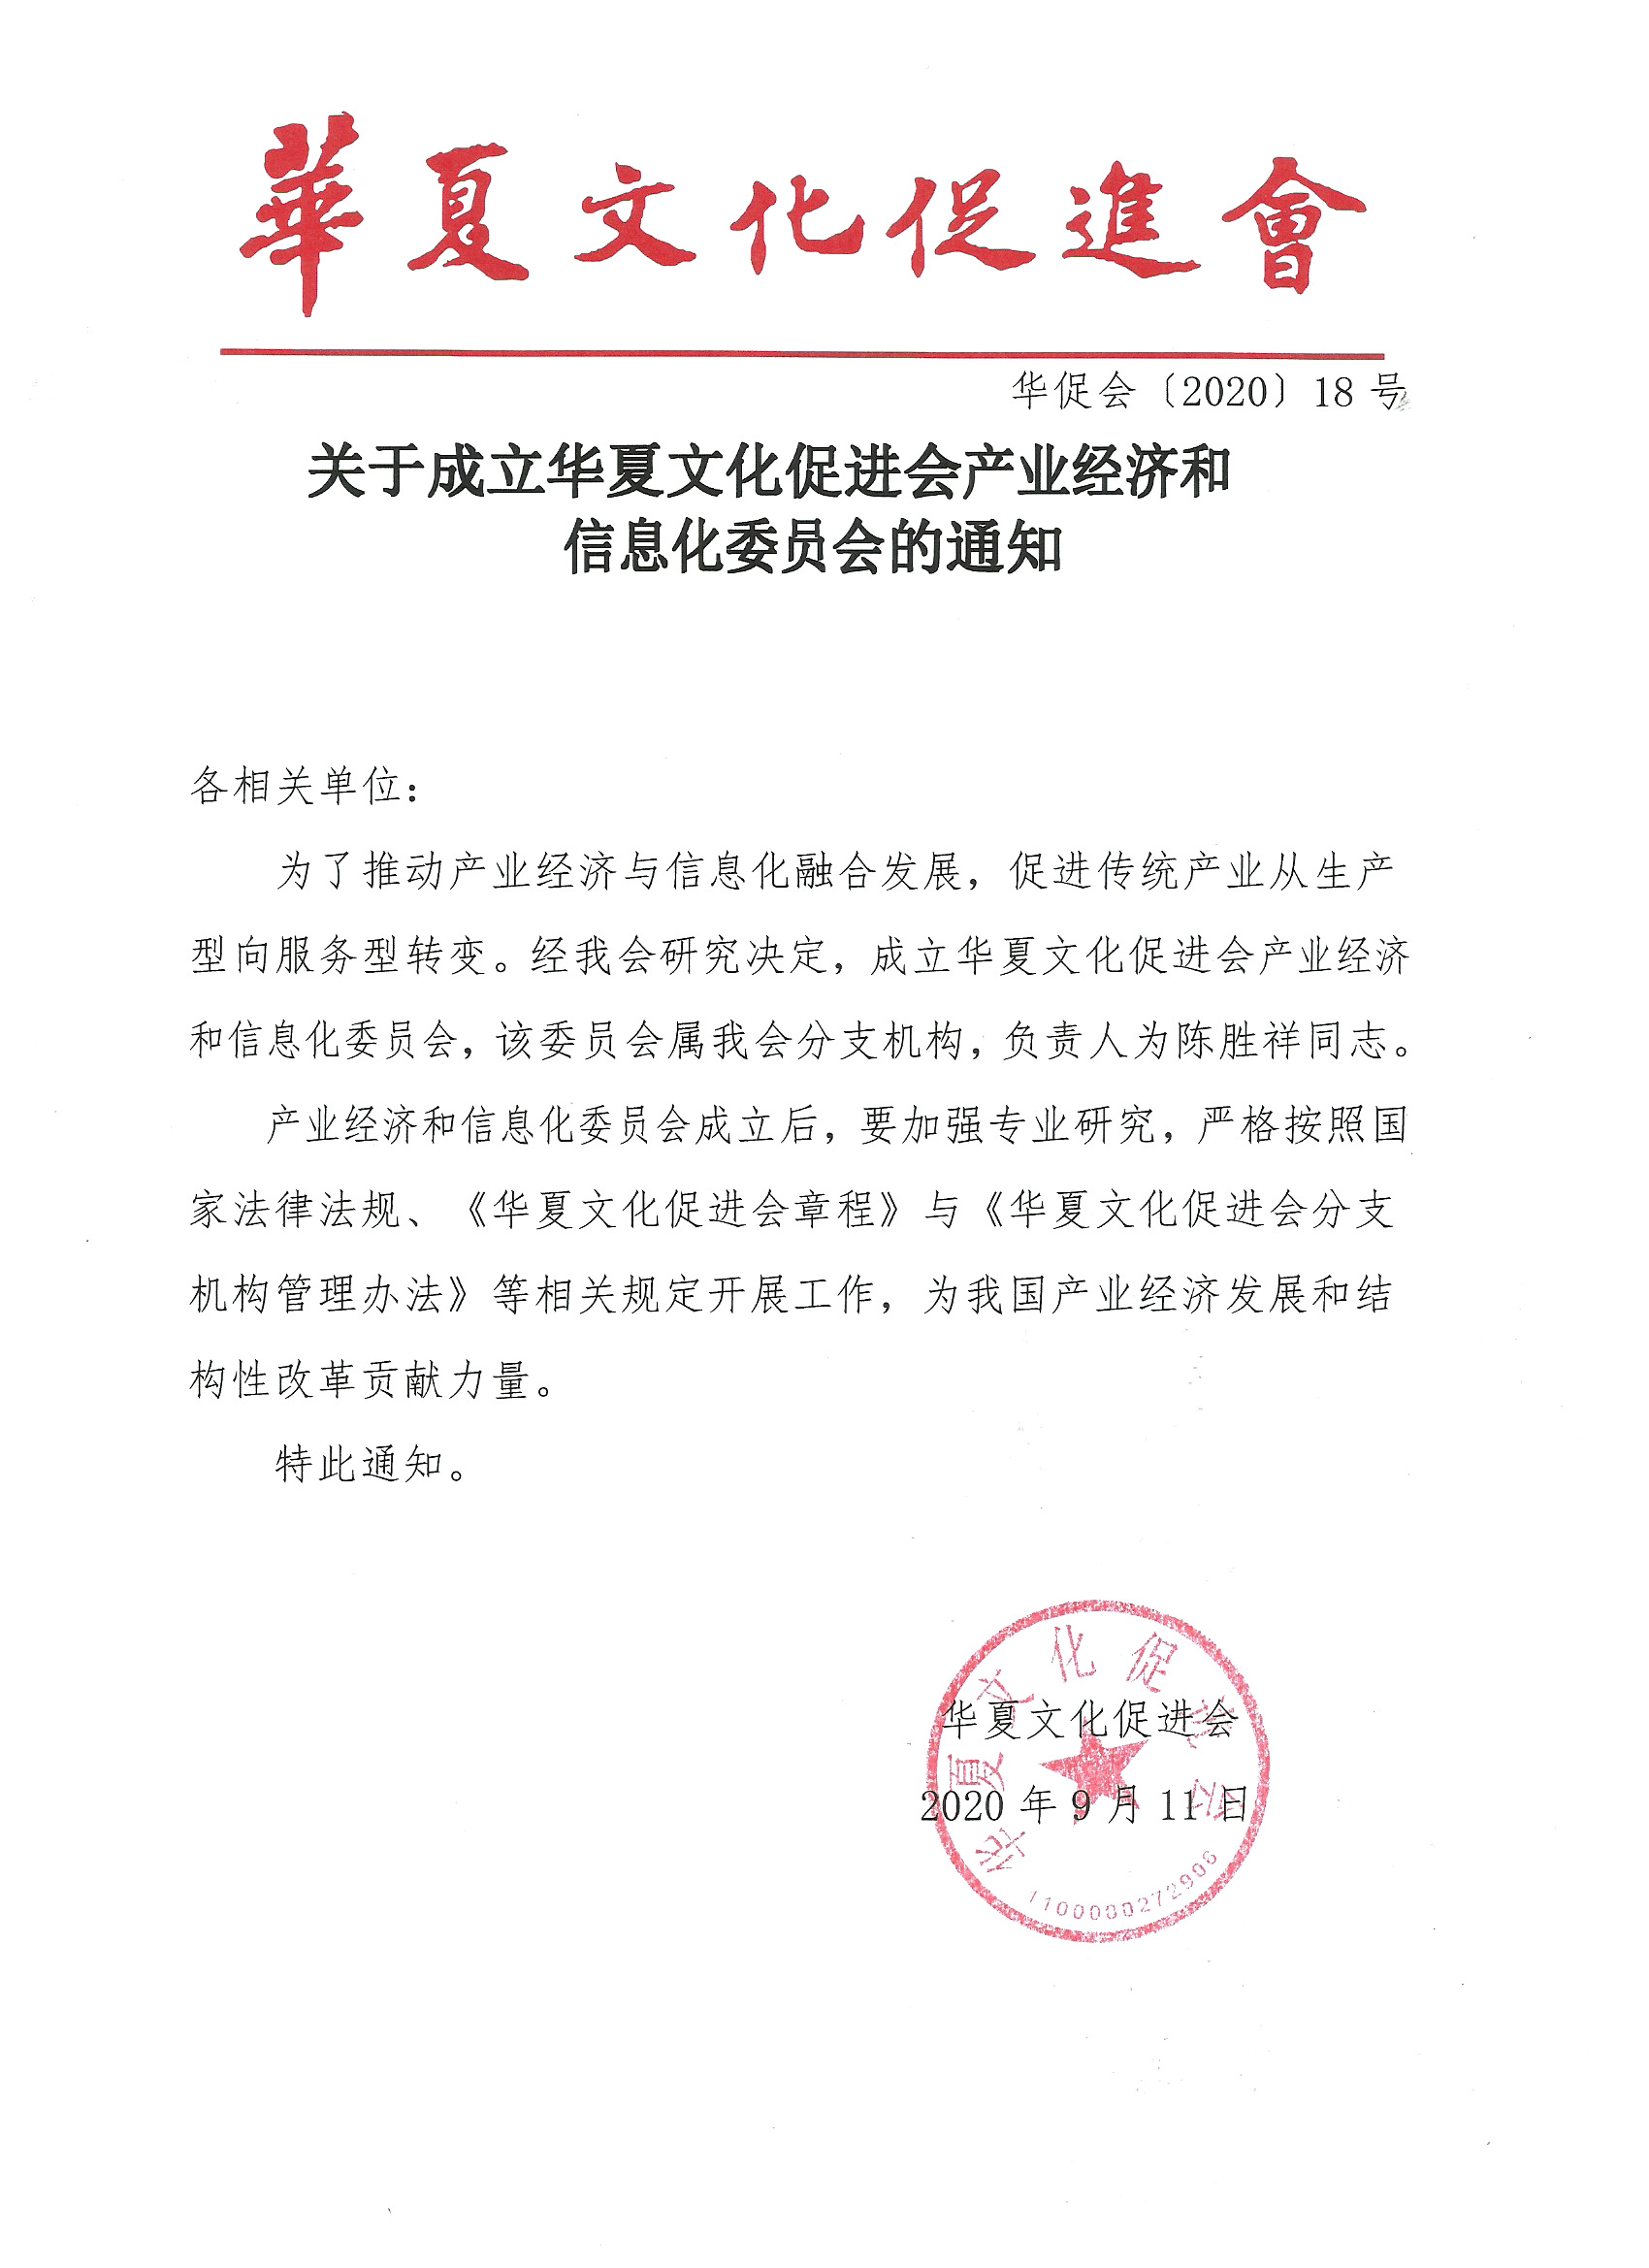 关于成立华夏文化促进会产业经济和信息化委员会的通知